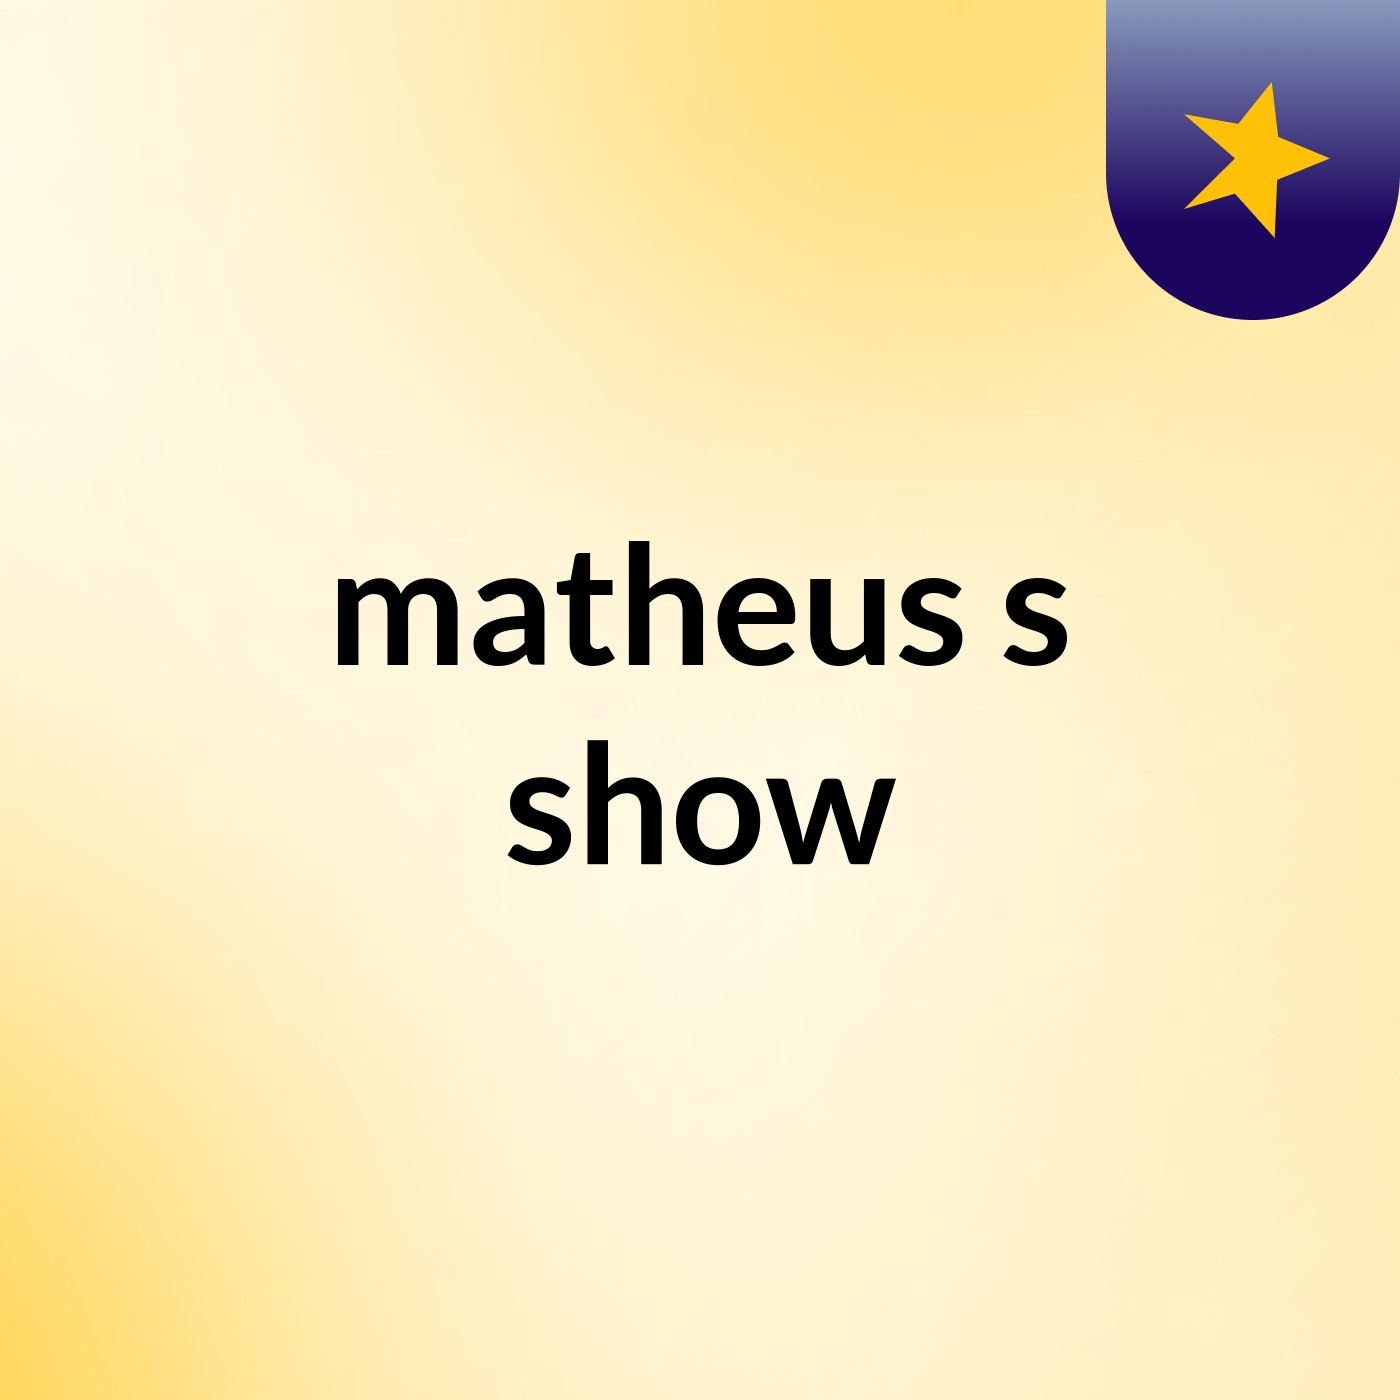 matheus's show